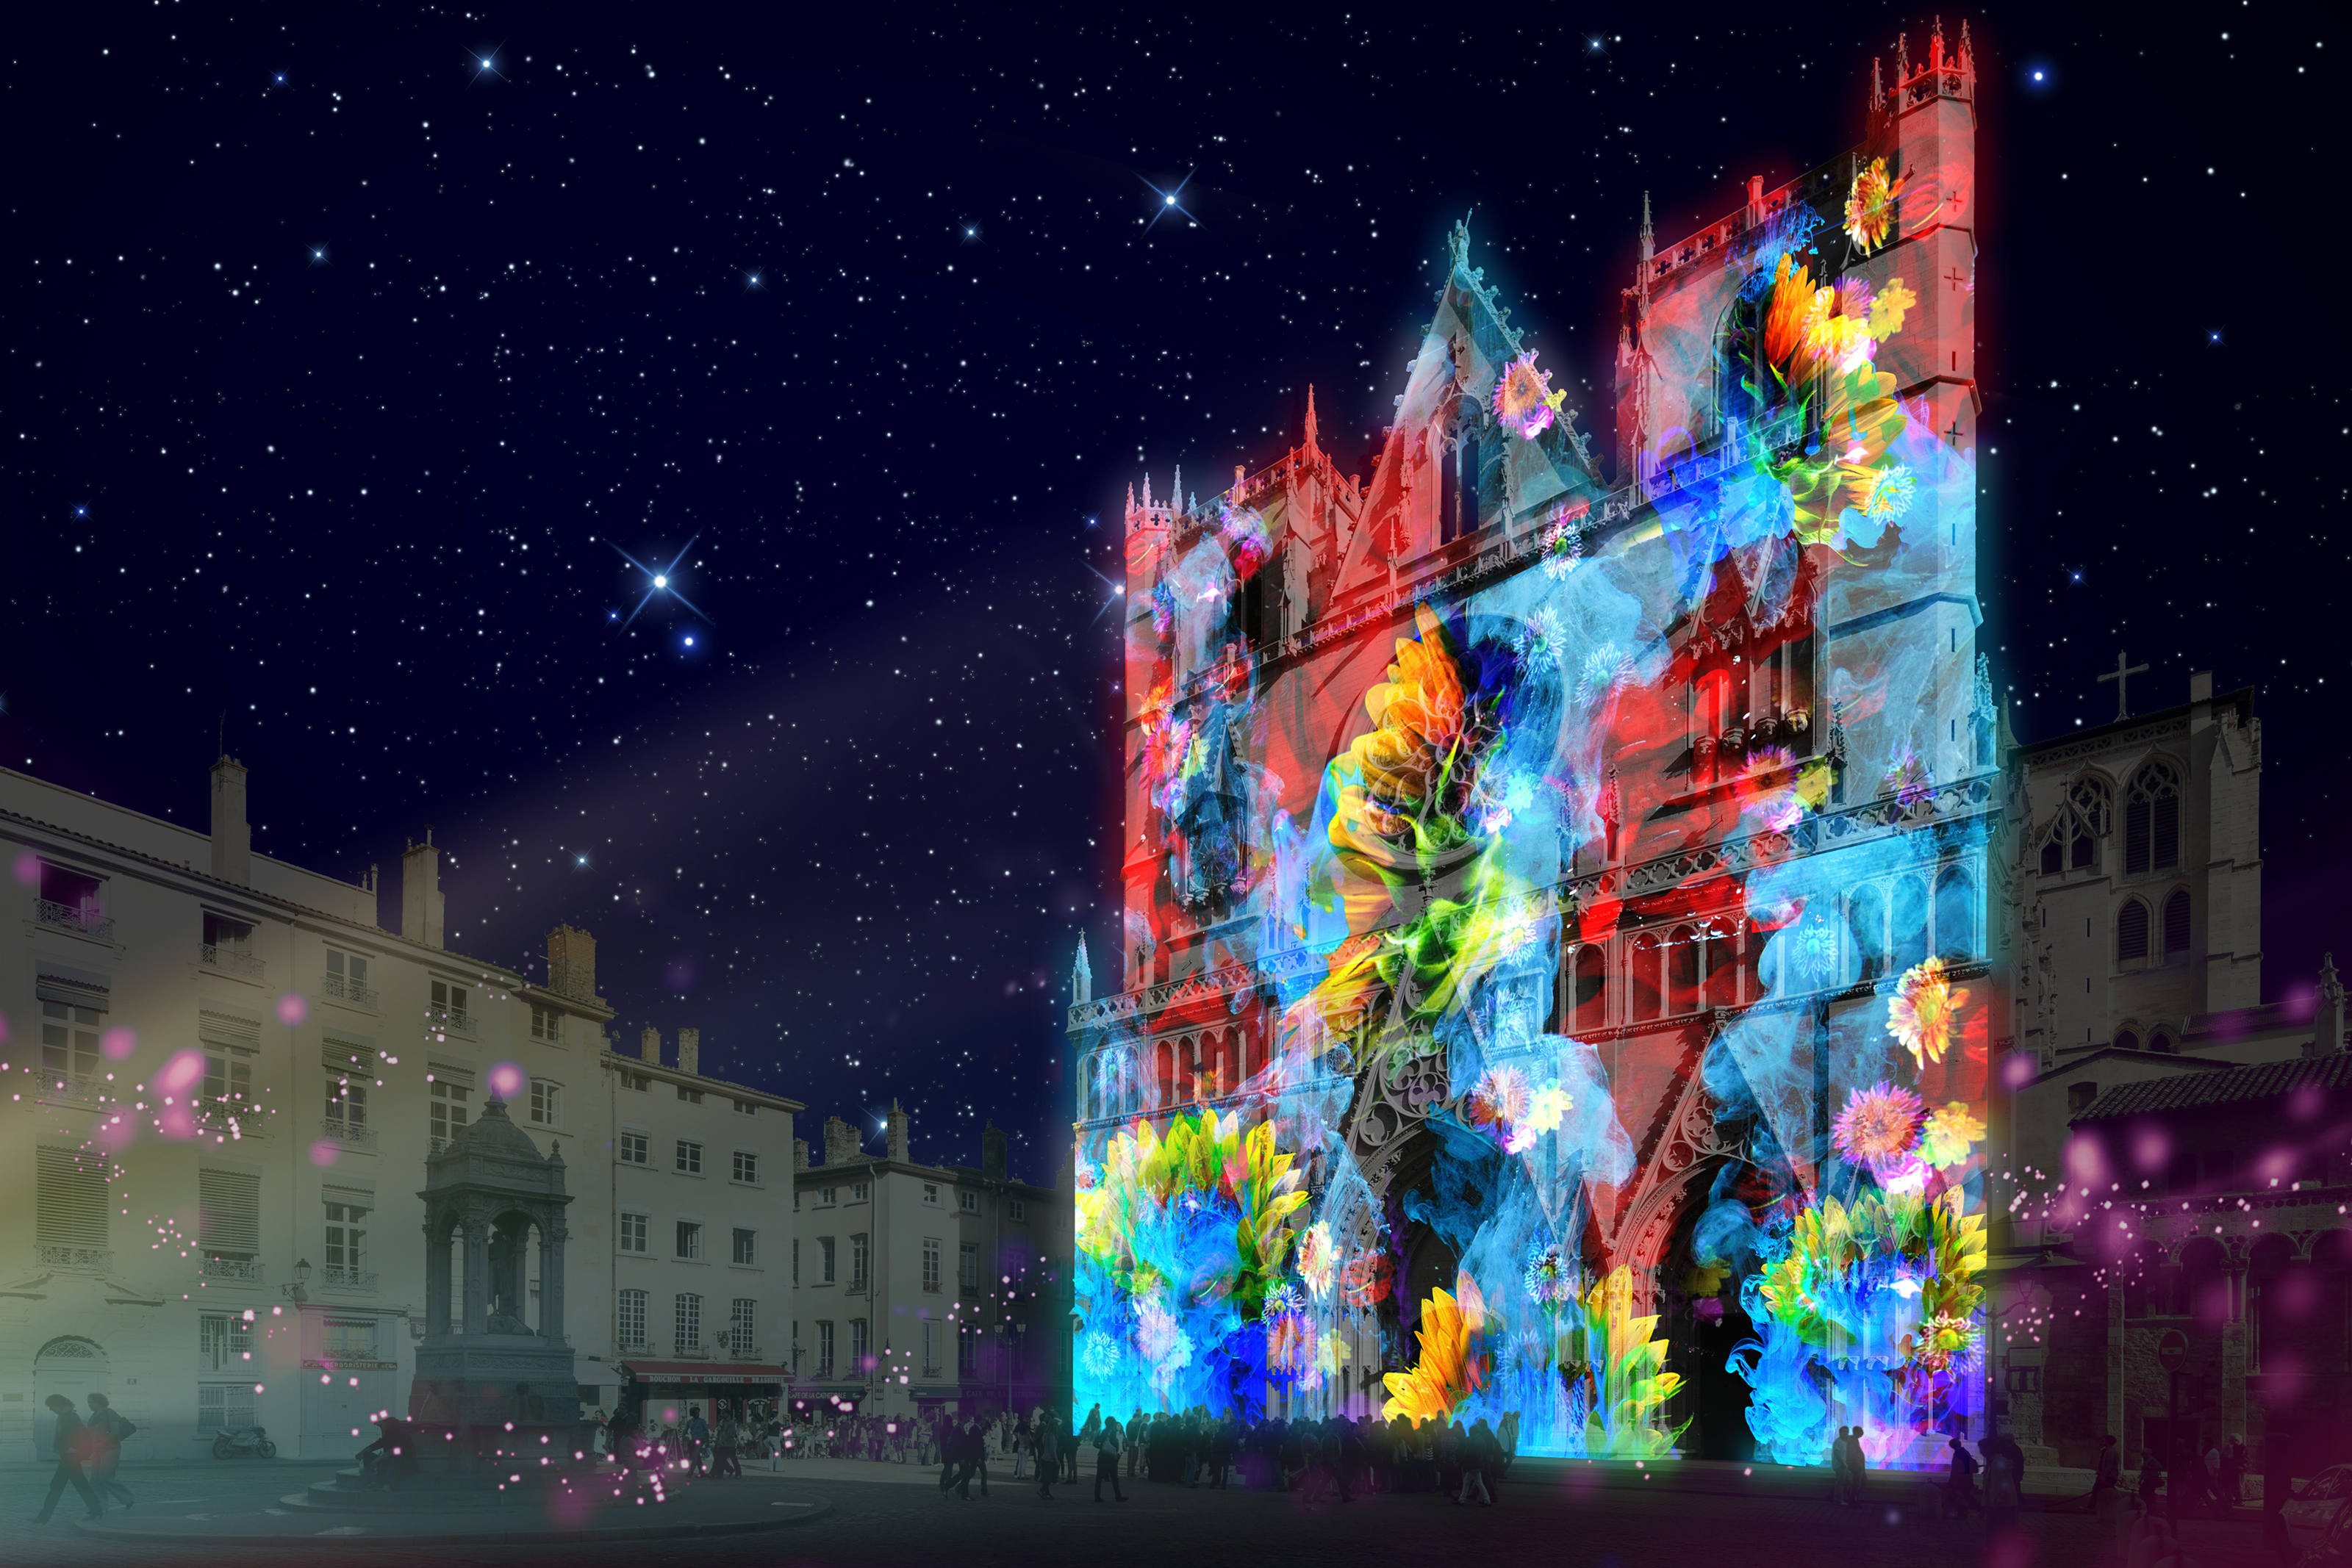 Fête des lumières 2018 – Pigments de lumière sur la cathédrale Saint-Jean (prévisualisation) © Nuno Maya & Carole Purnelle / Ocubo